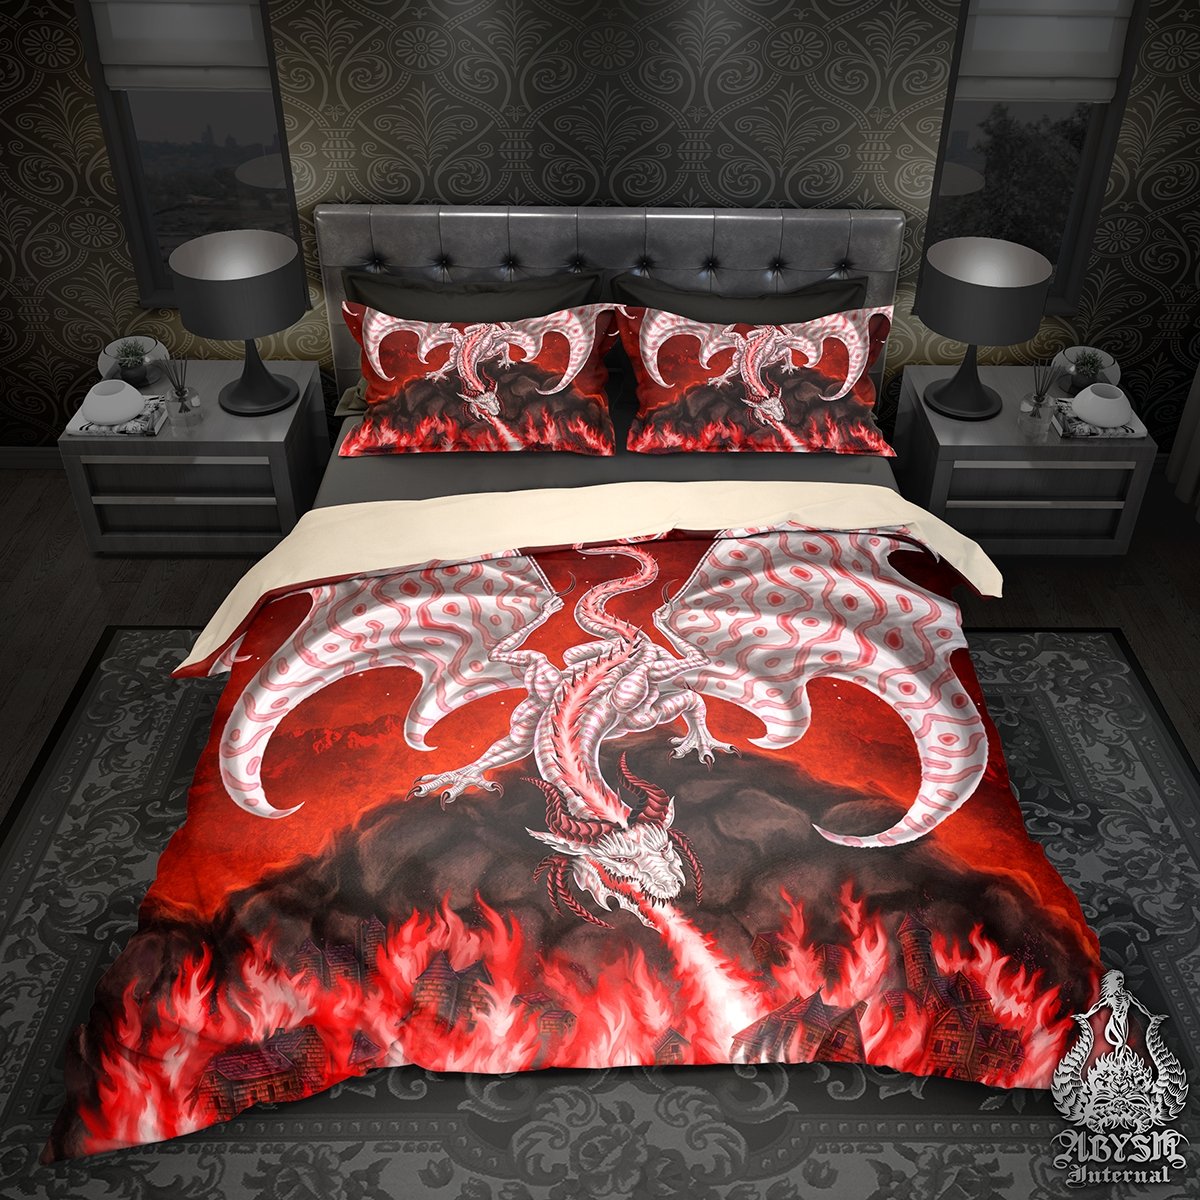 Red Comforter Set (King, Queen, Full, & Twin)